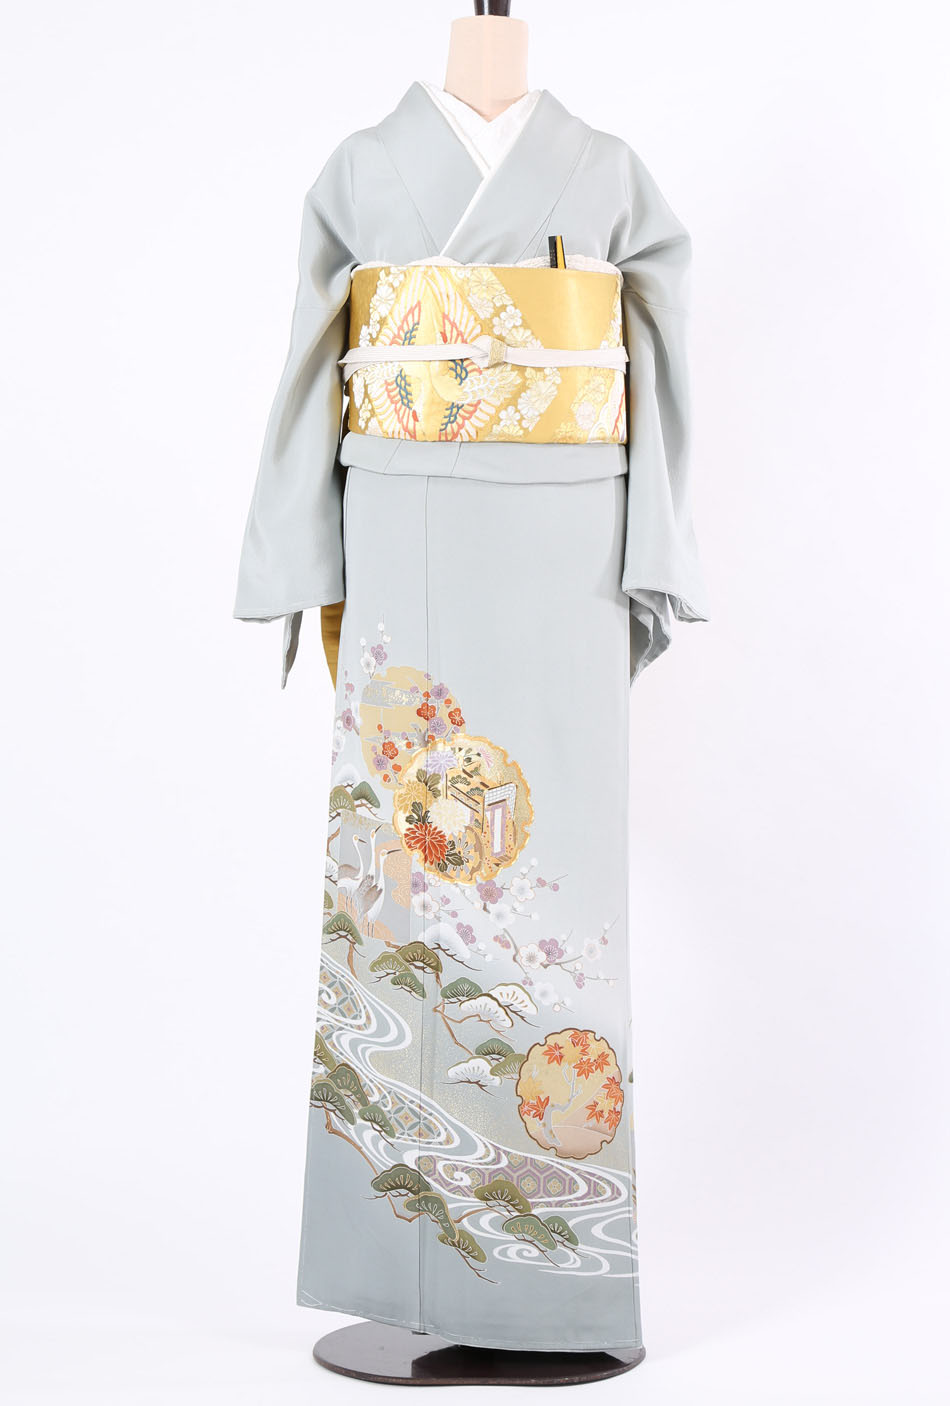 色留袖 No.3 | 東京・銀座で着物レンタル・着付けなら「着物興栄」全国 